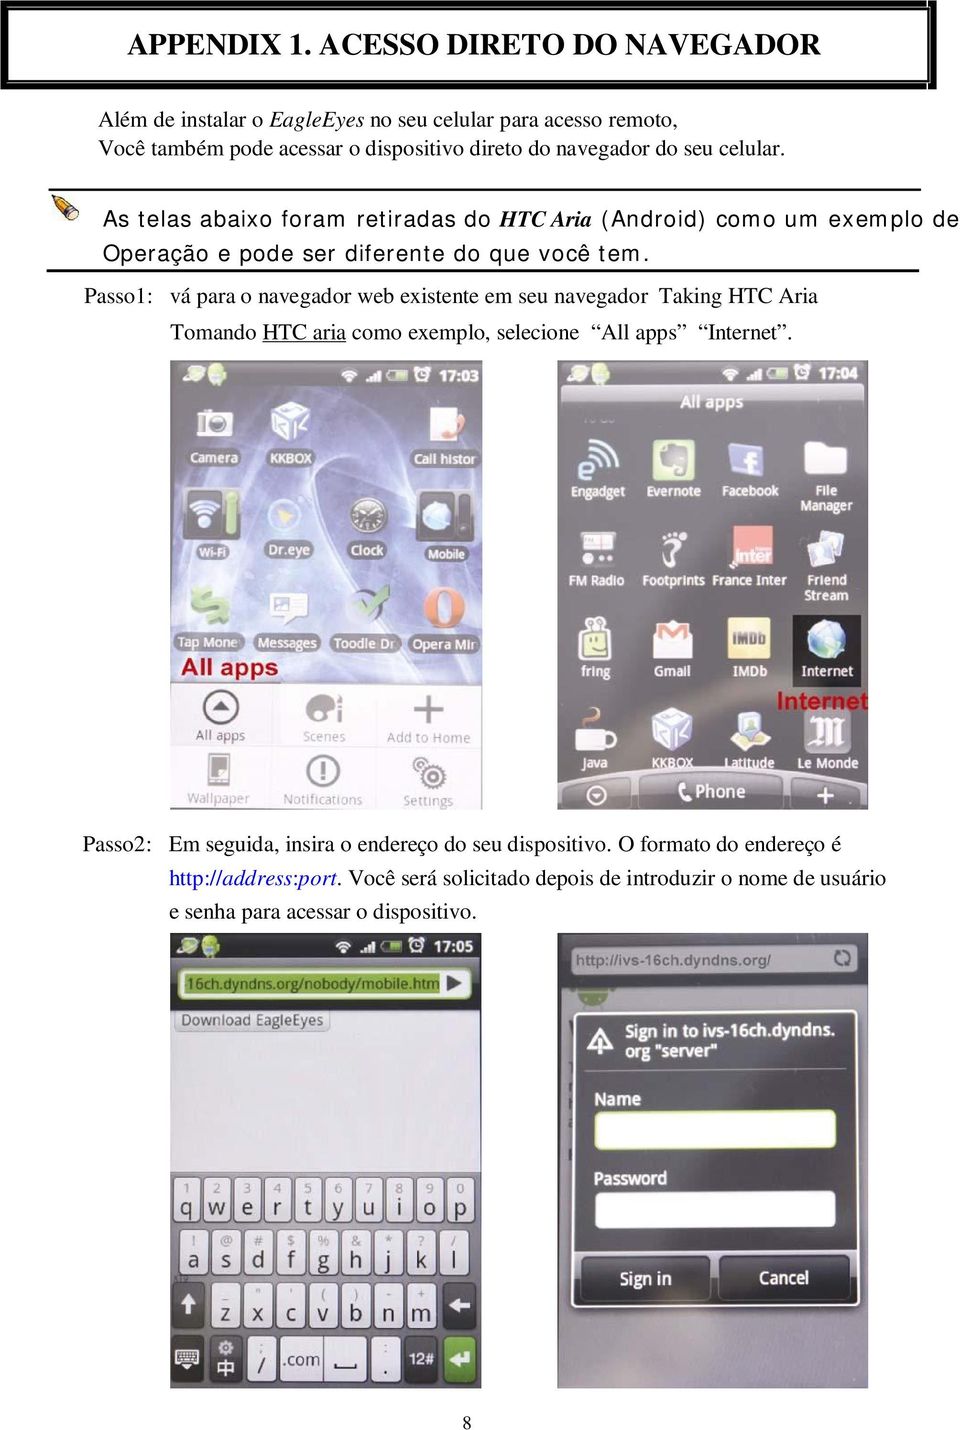 celular. As telas abaixo foram retiradas do HTC Aria (Android) como um exemplo de Operação e pode ser diferente do que você tem.